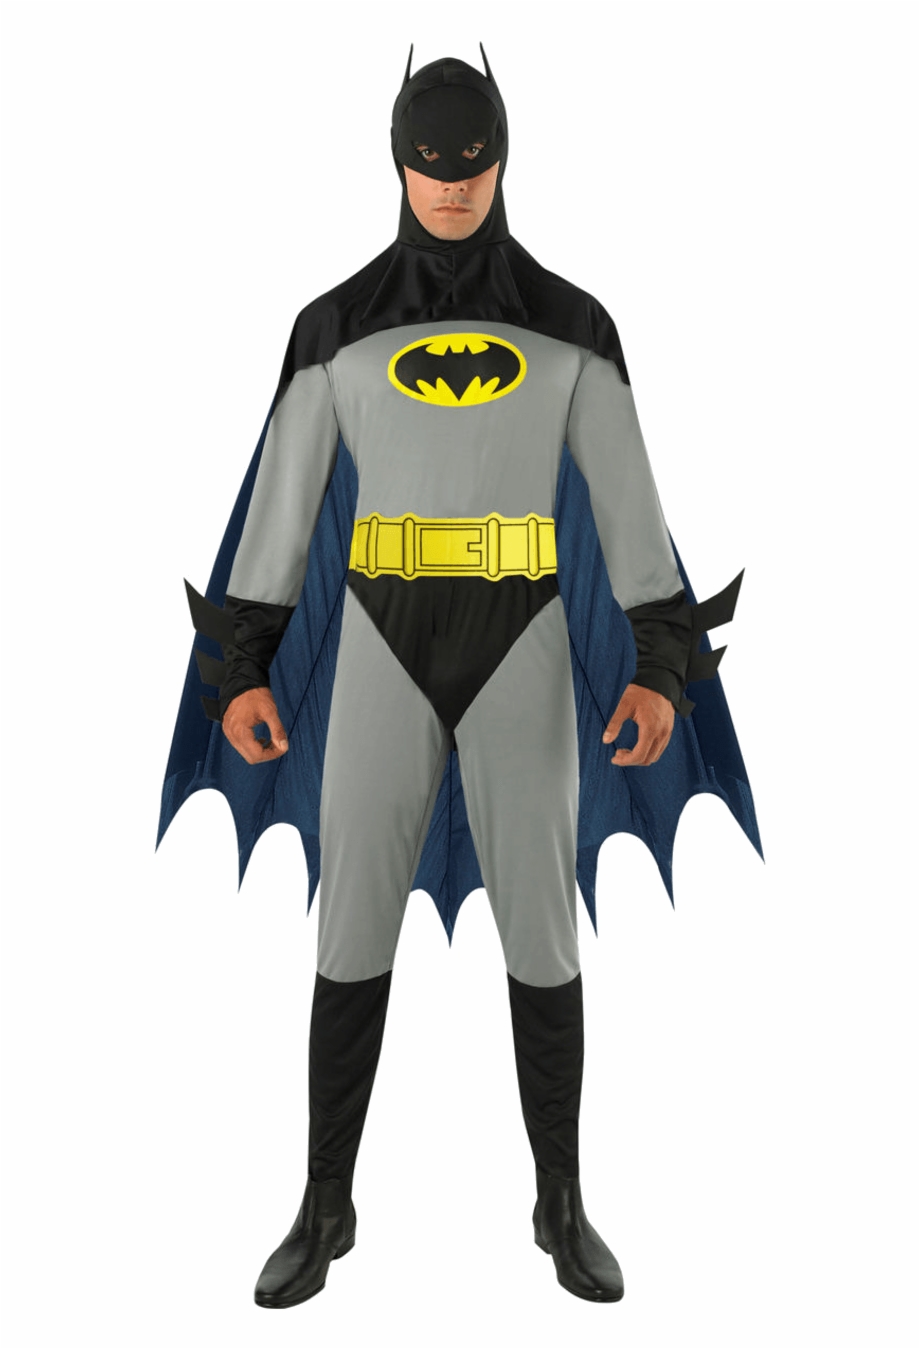 The Batman Classic Adult Fancy Dress Costume Batman